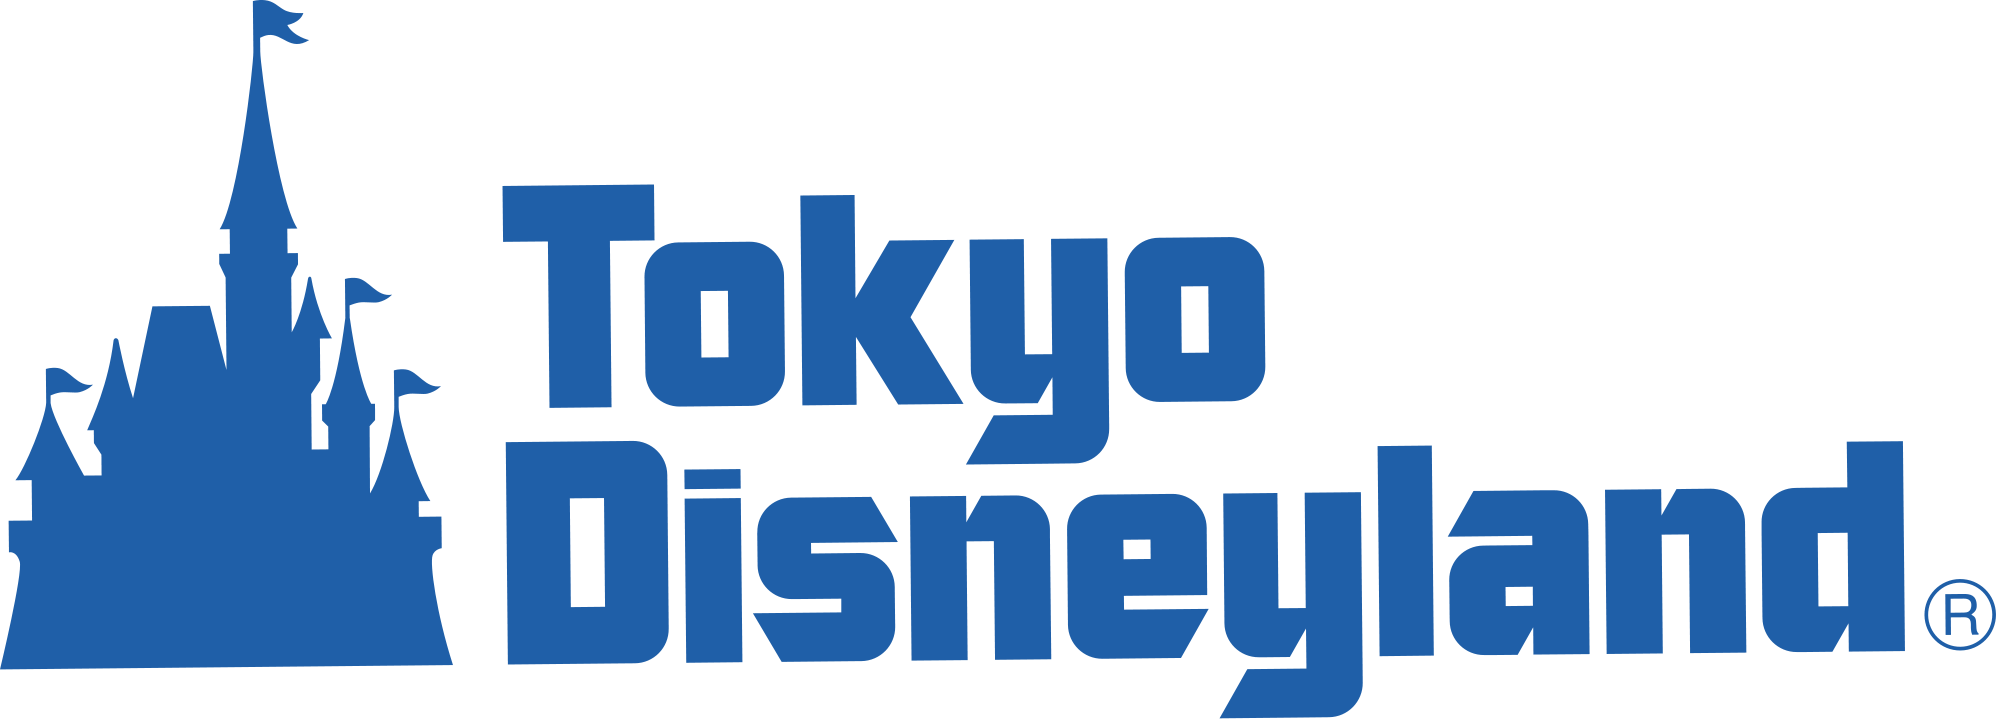 Disney Resorts and Parks Logo - Image - Tokyo Disneyland logo.png | Disney Parks Wiki | FANDOM ...